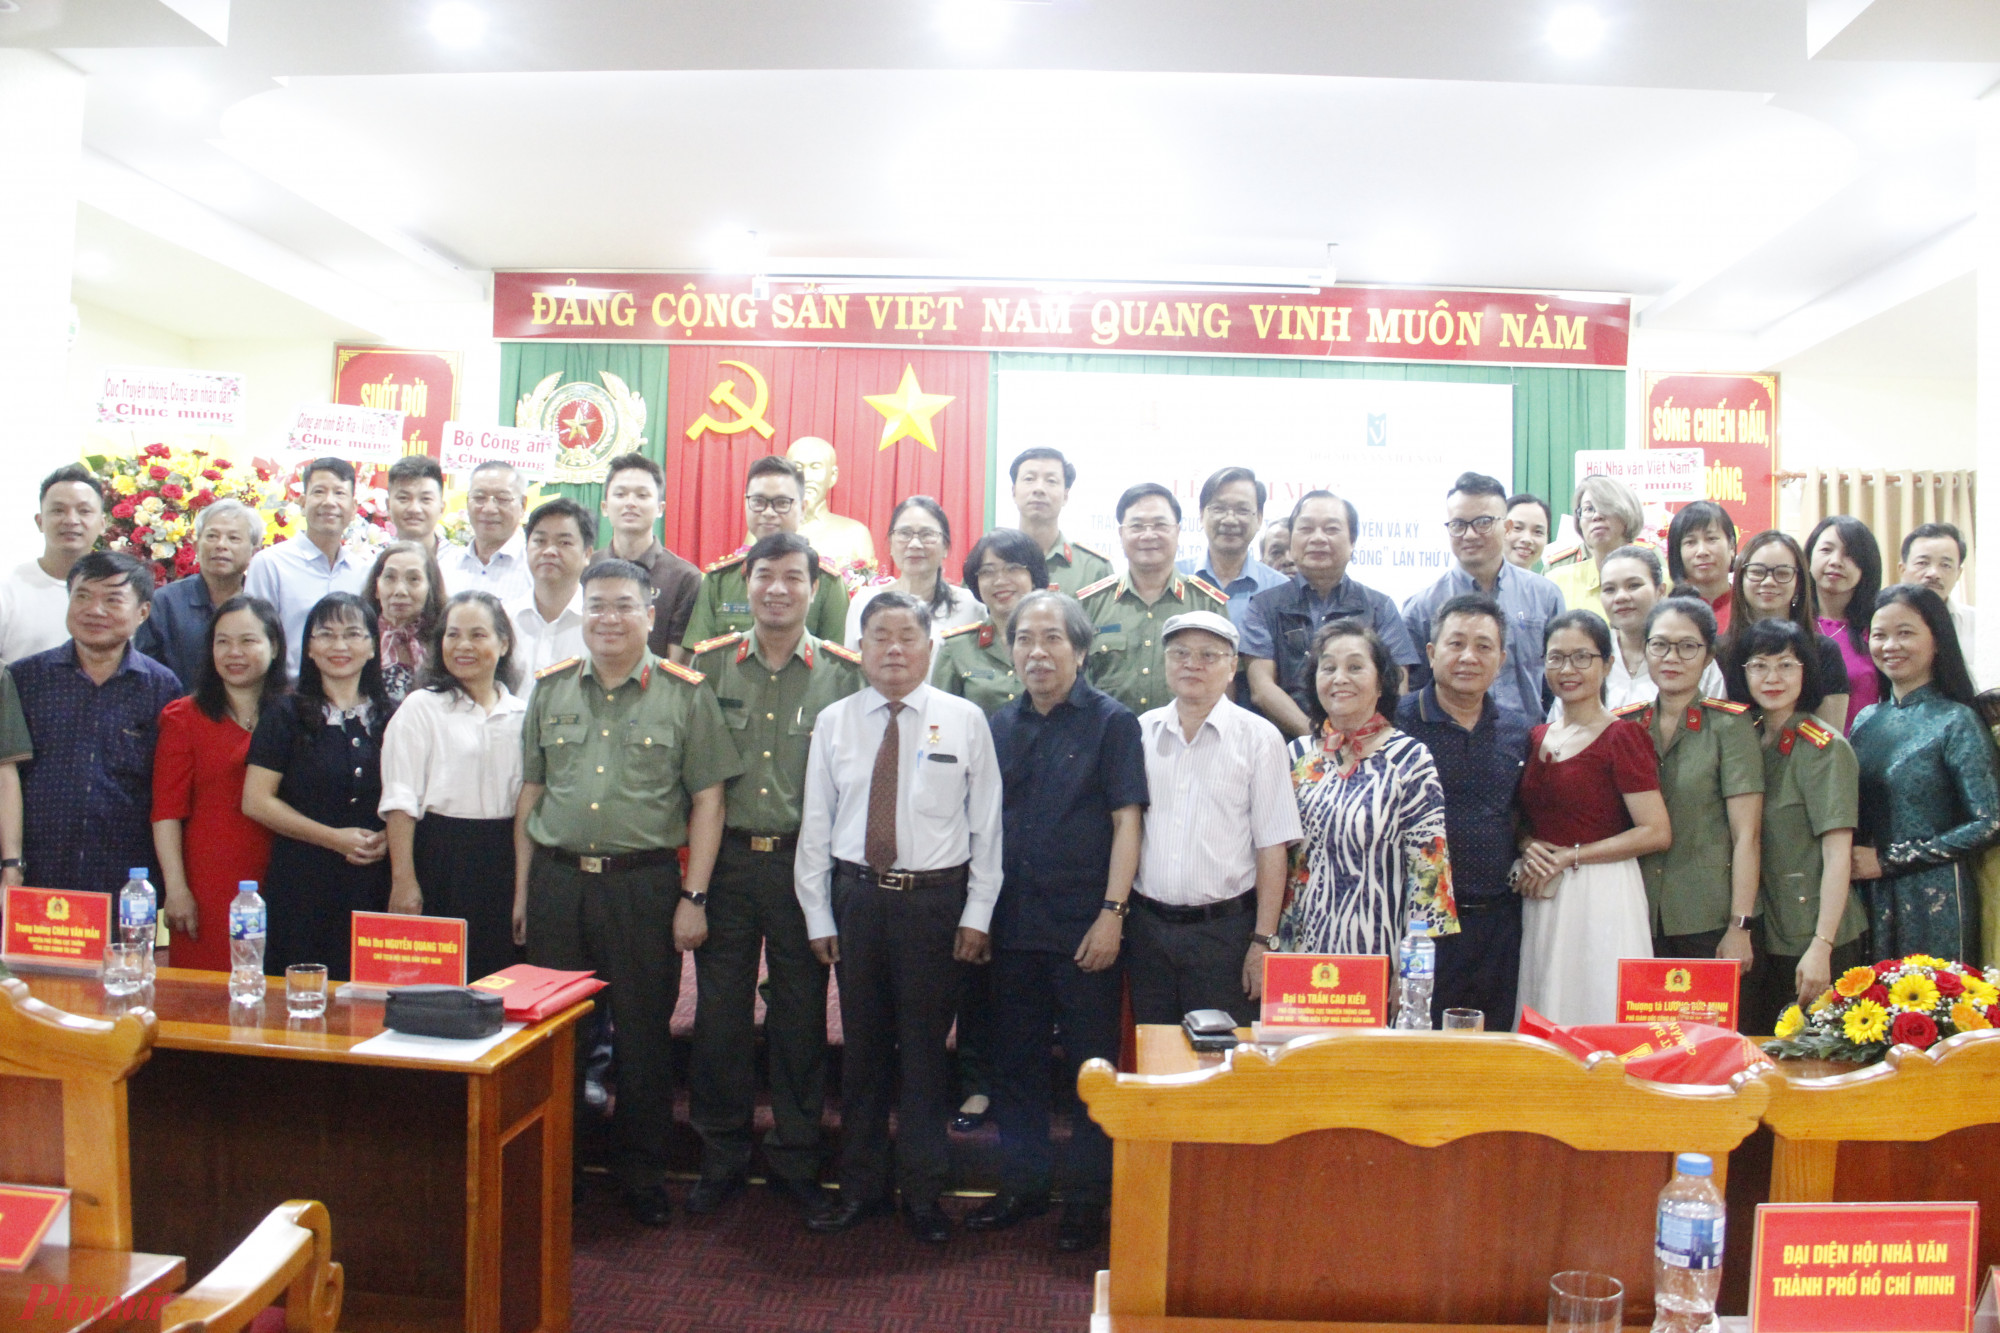 Lãnh đạo Hội Nhà văn Việt Nam, Cục truyền thông CAND và Công an tỉnh Bà Rịa – Vũng Tàu chụp ảnh lưu niệm cùng các nhà văn, tác giả tham gia trại sáng tác.